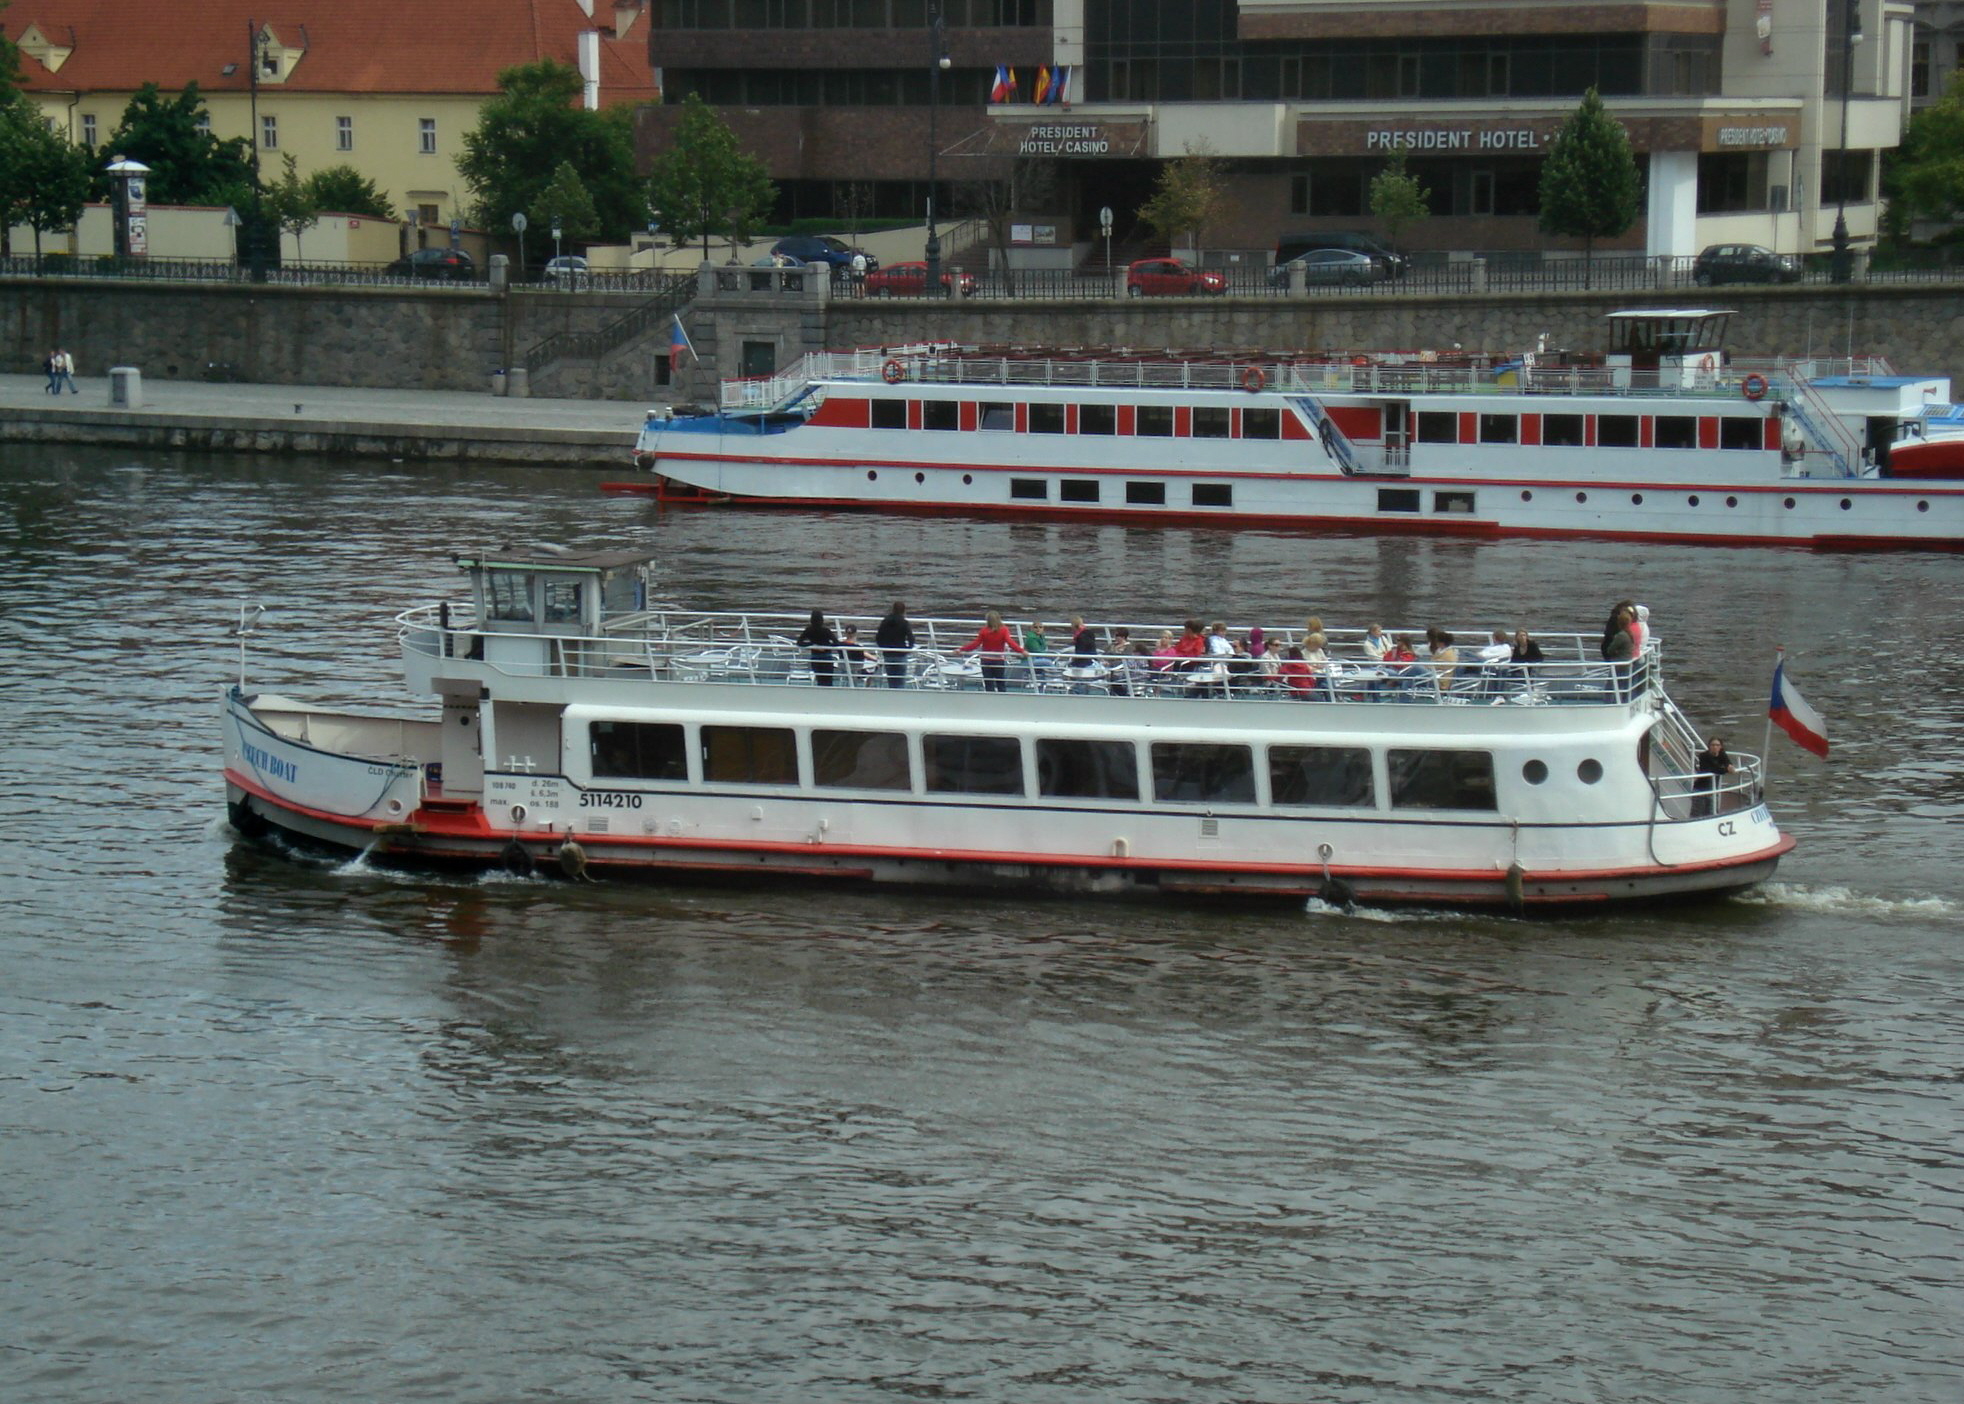 Chech Boat 002 am 18.6.2010 in Prag_1